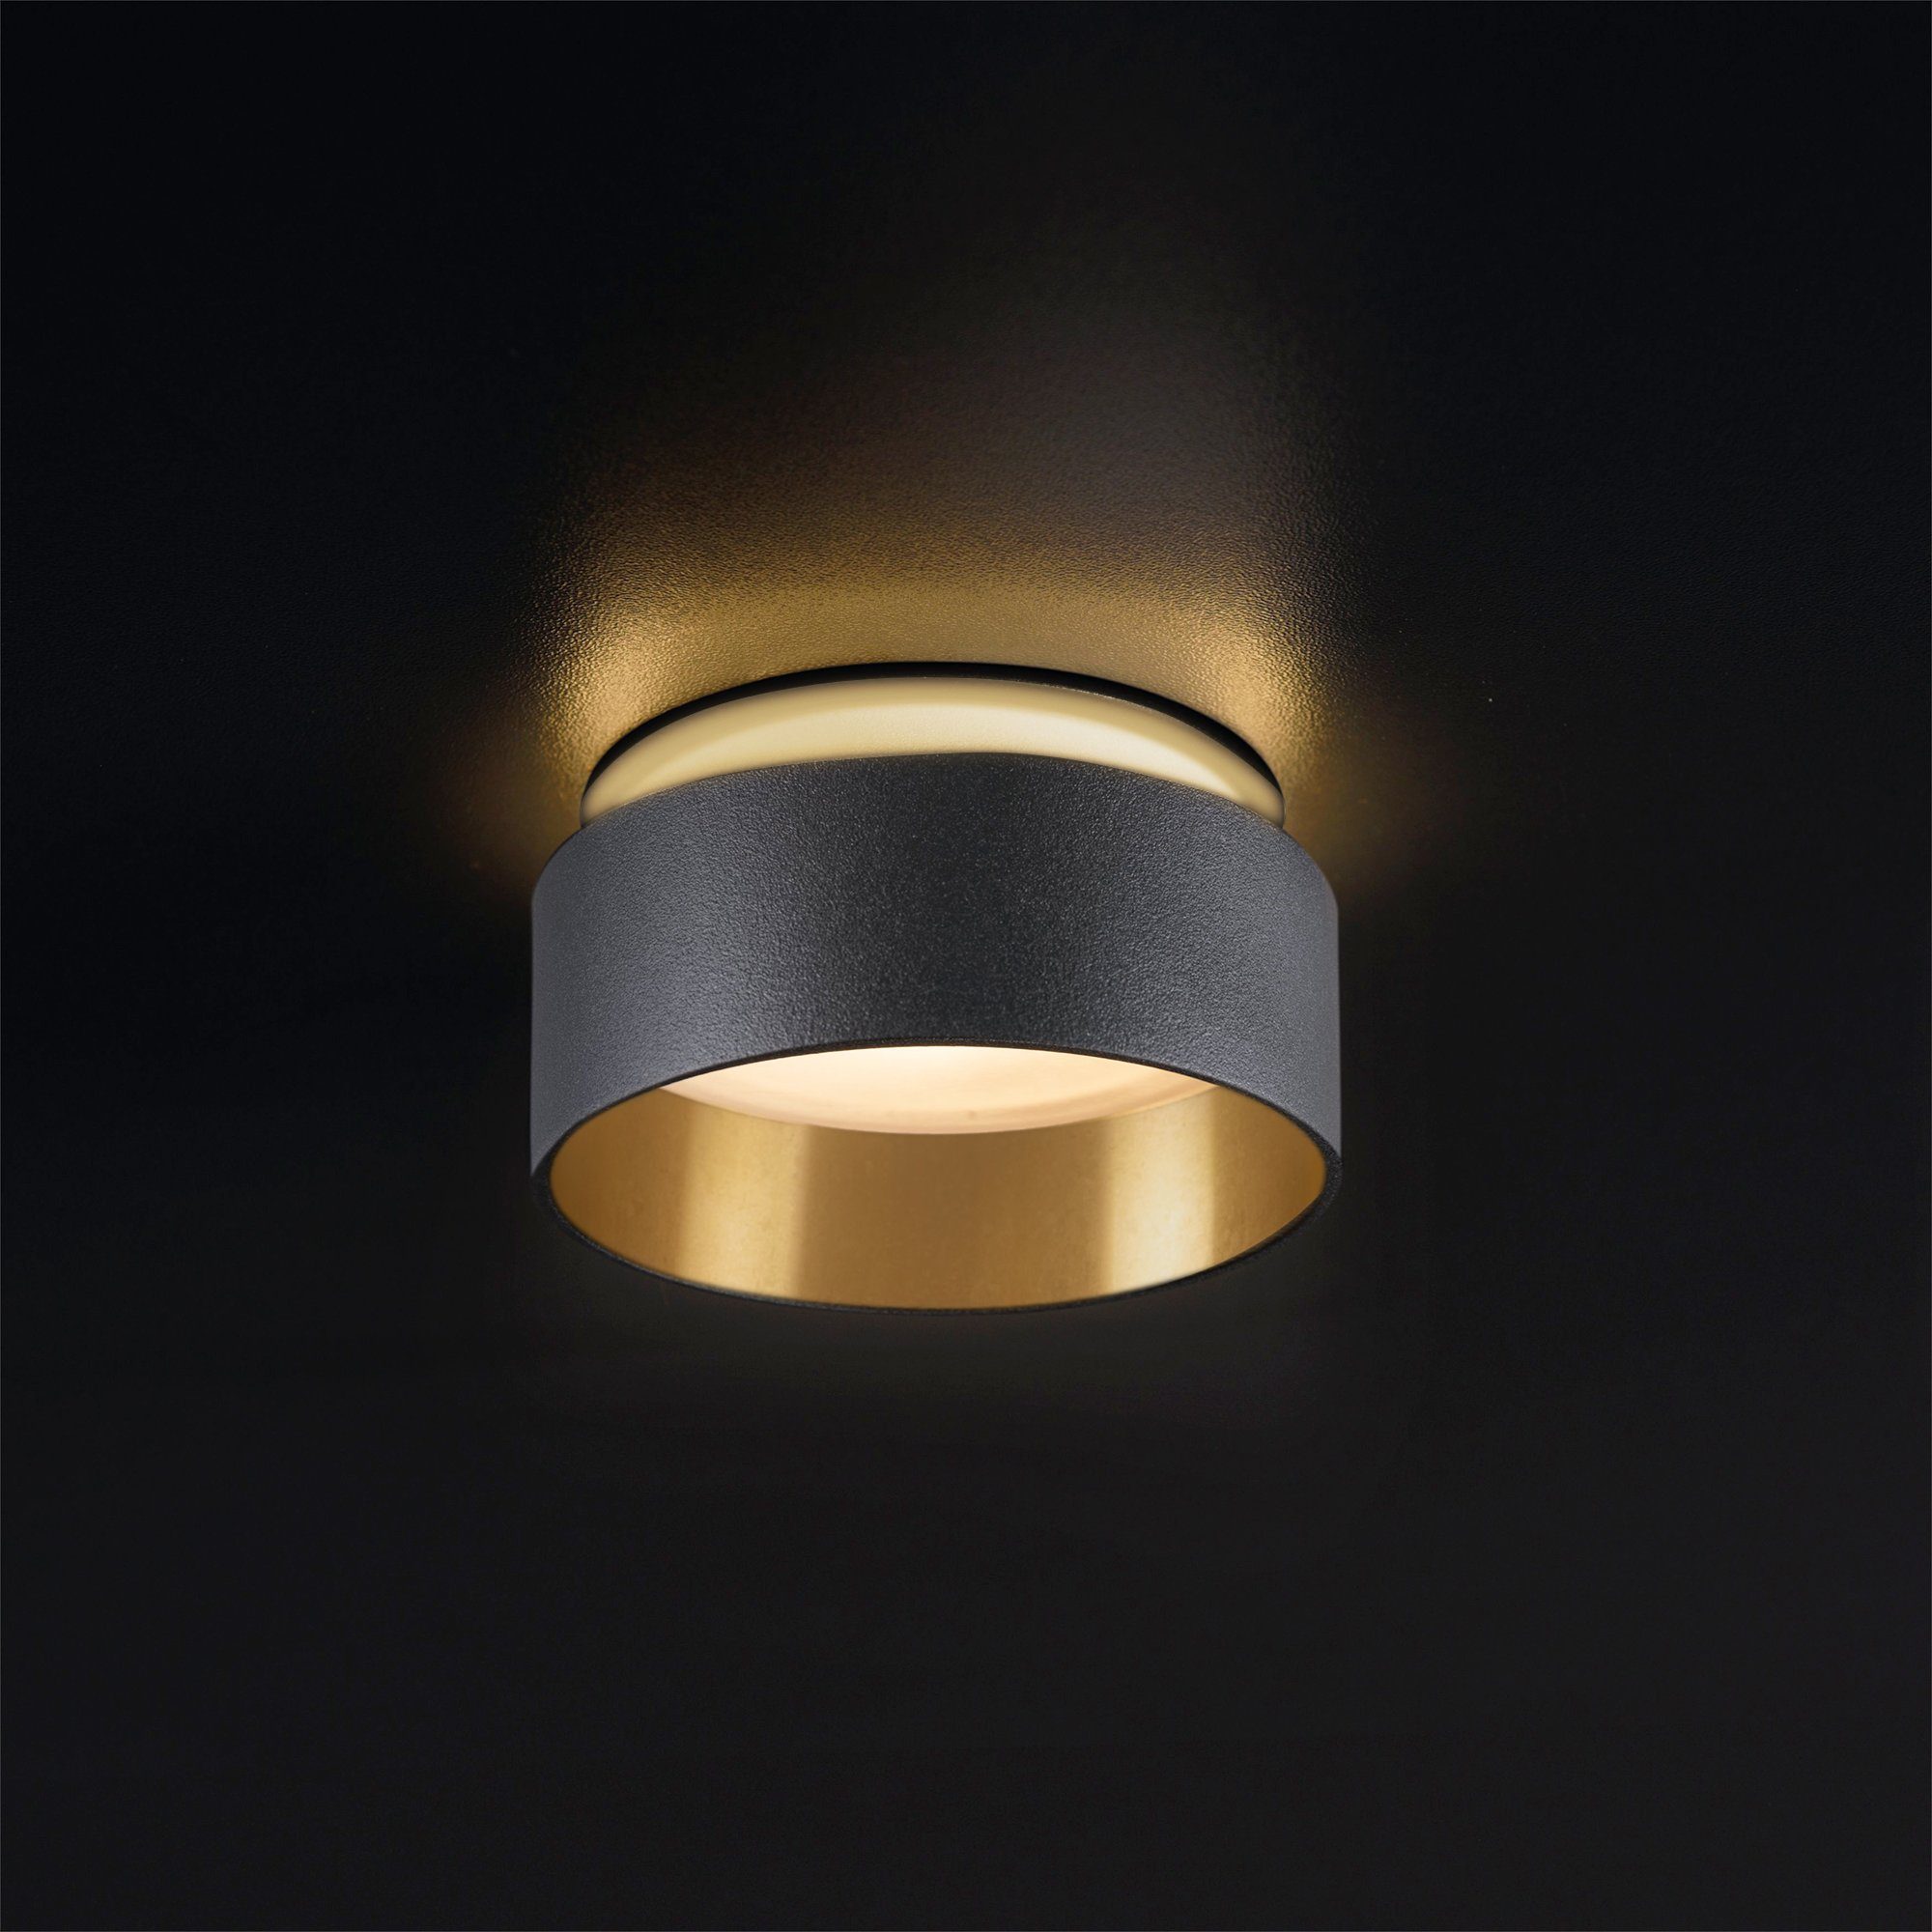 Warmweiß indirektes SSC-LUXon schwarz Sudara Licht Aufbauleuchte LED, gold LED Einbauspot mit Design